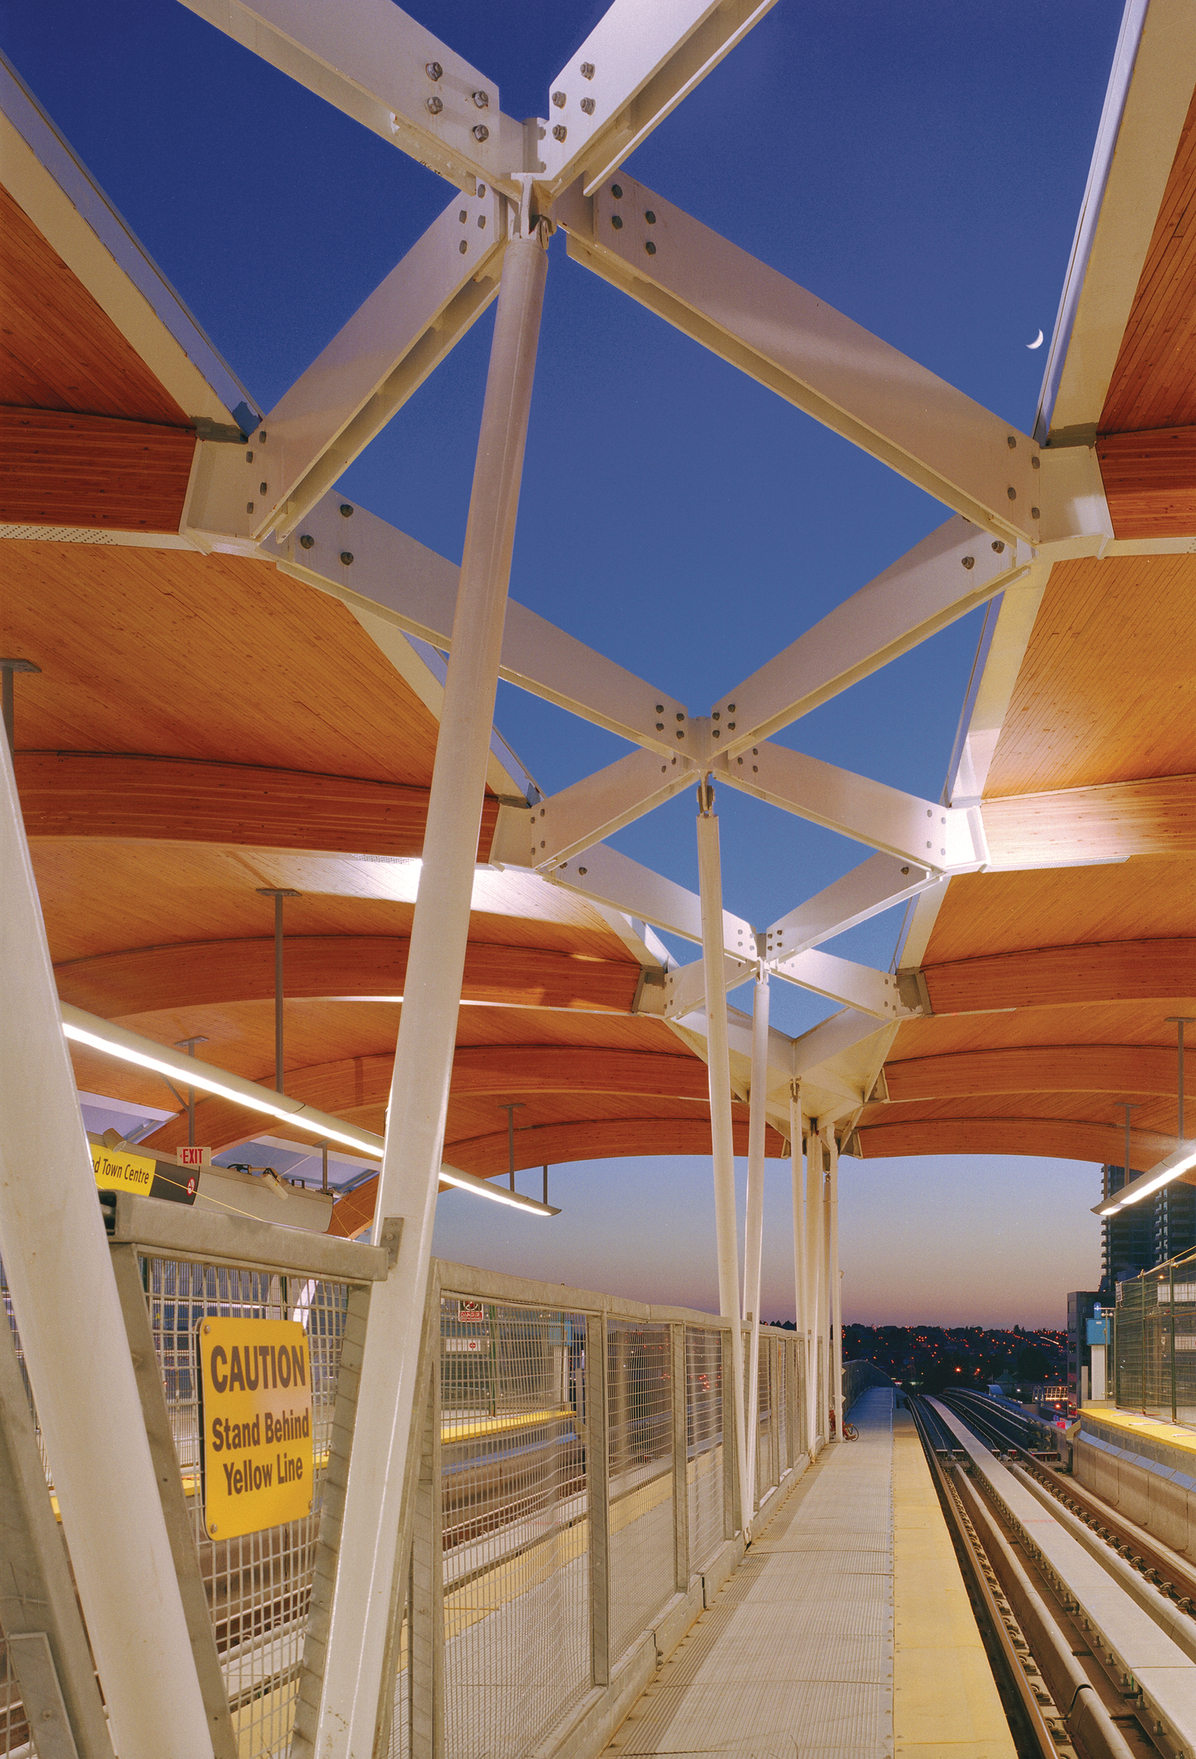 大型拱形钉层压木材(NLT)梁支撑着木质天花板，这是本纳比市布伦特伍德中转站内部景观的突出特征